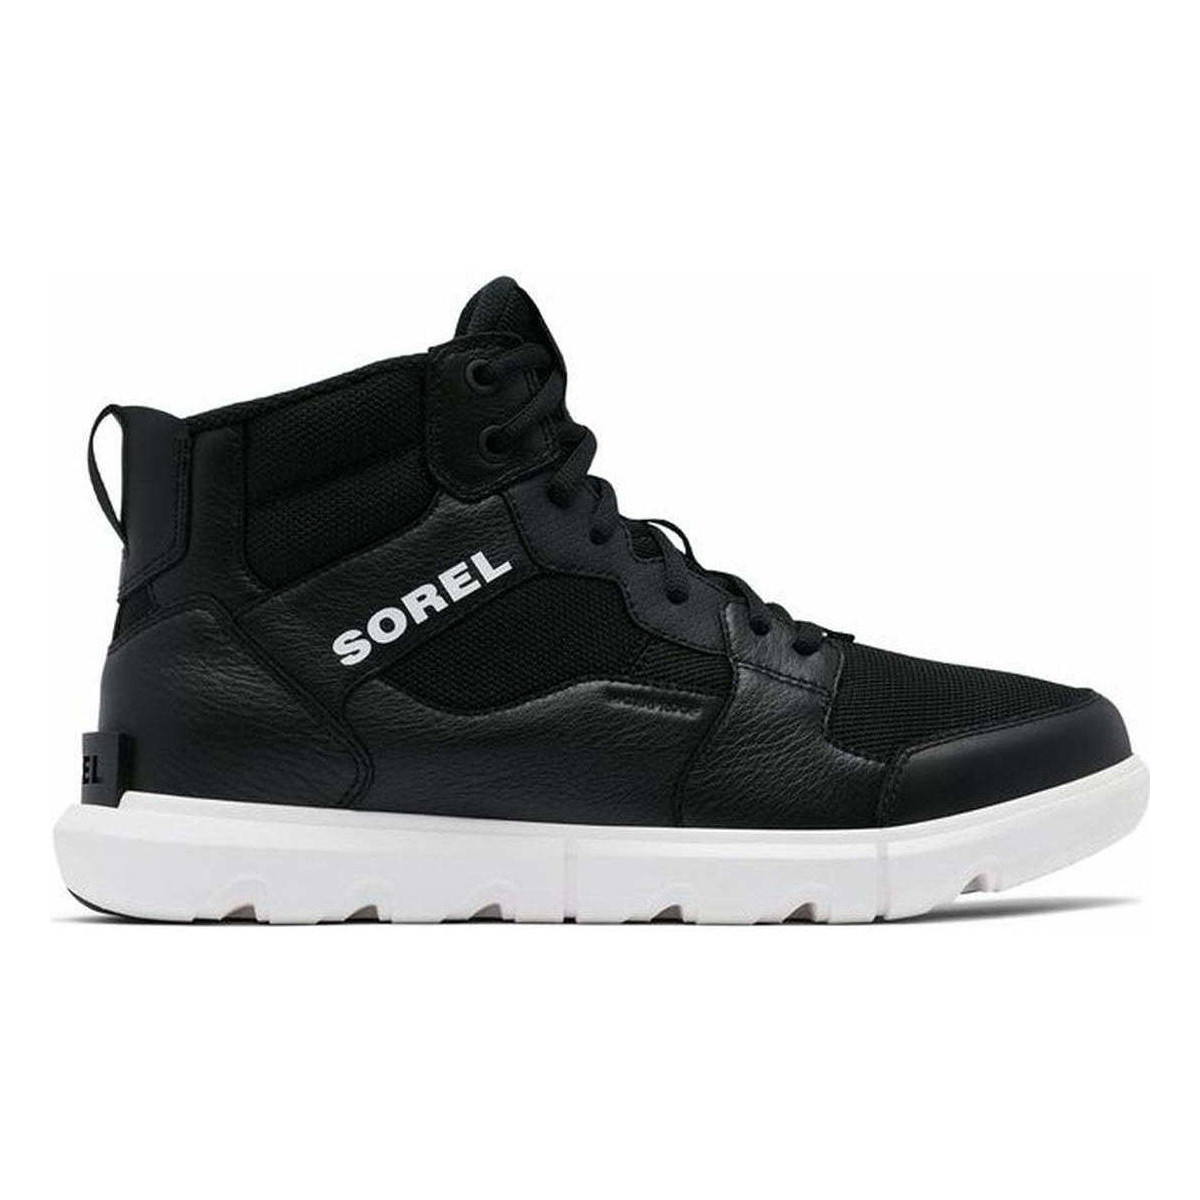 Chaussures Homme Boots Sorel explorer sneaker mid wp booties Noir